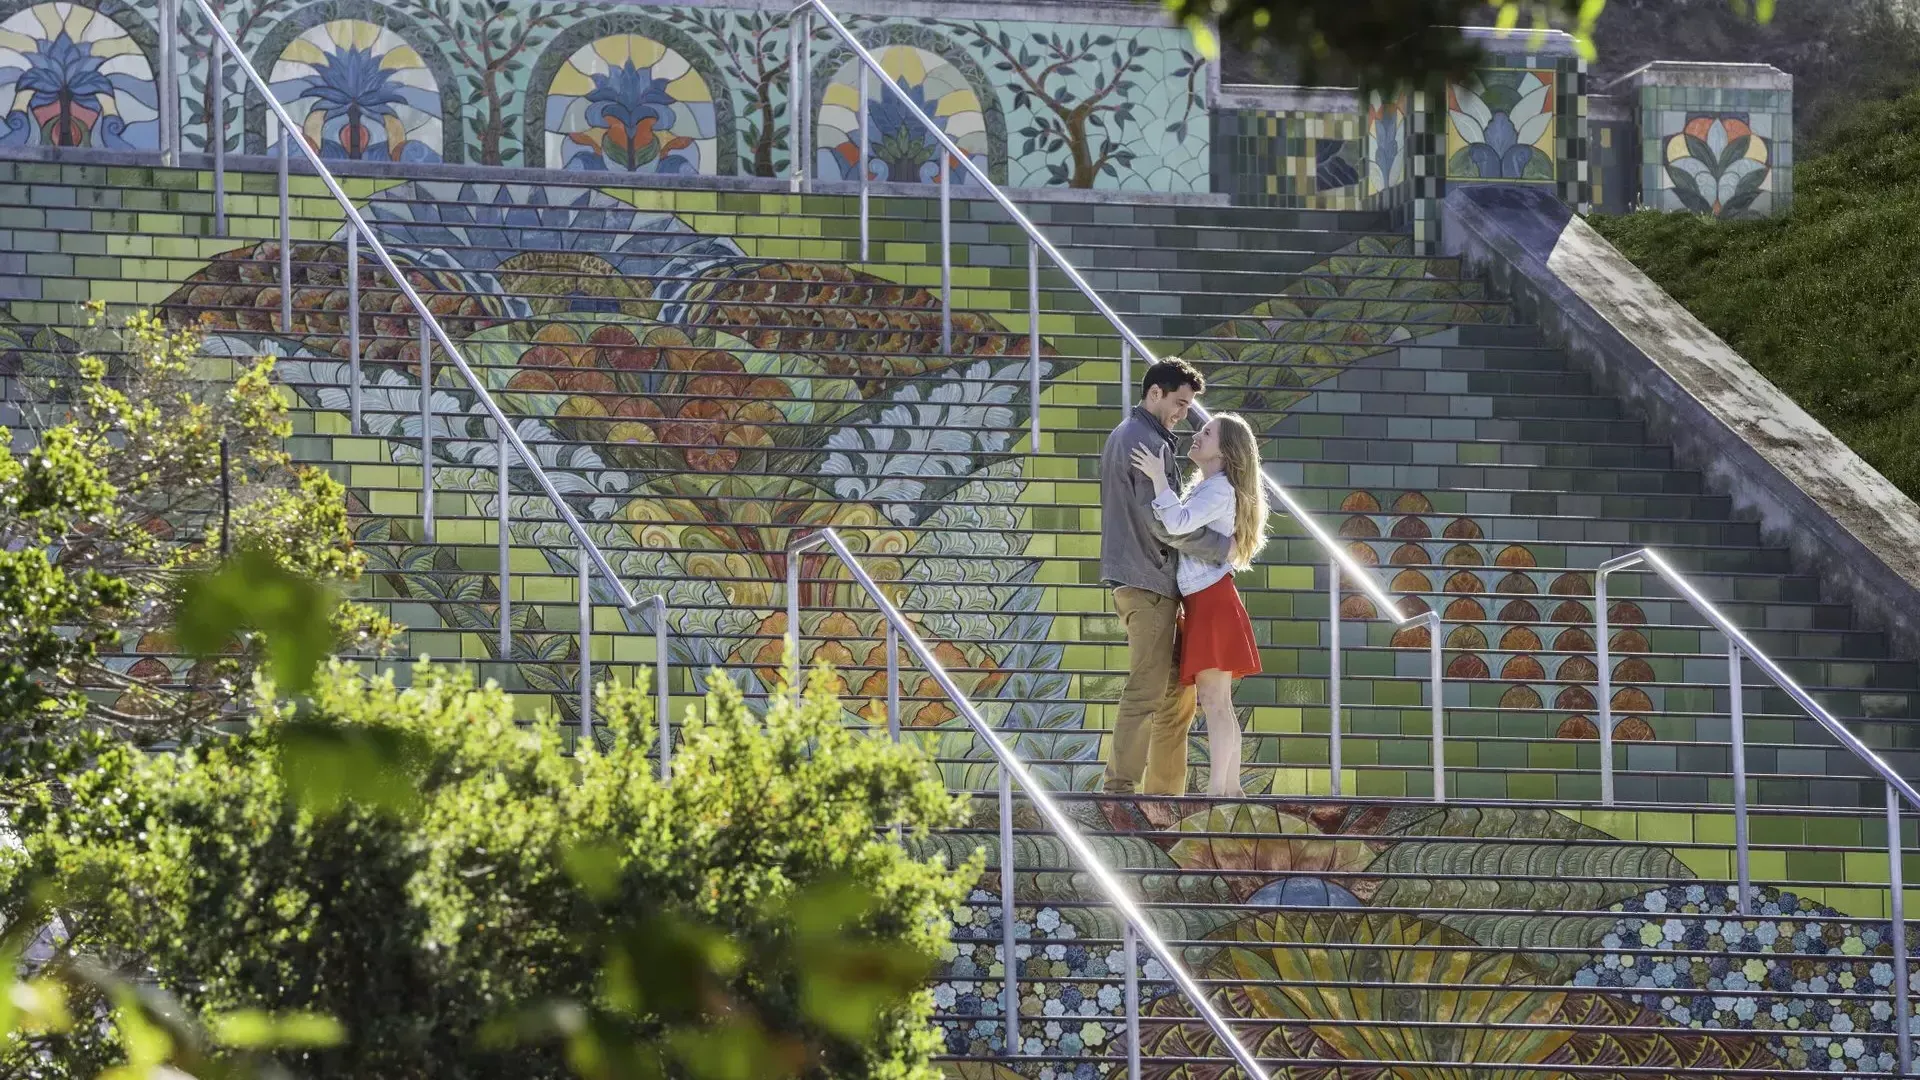 リンカーンパークのカラフルなタイル張りの階段に立っているカップルを斜めから撮った写真